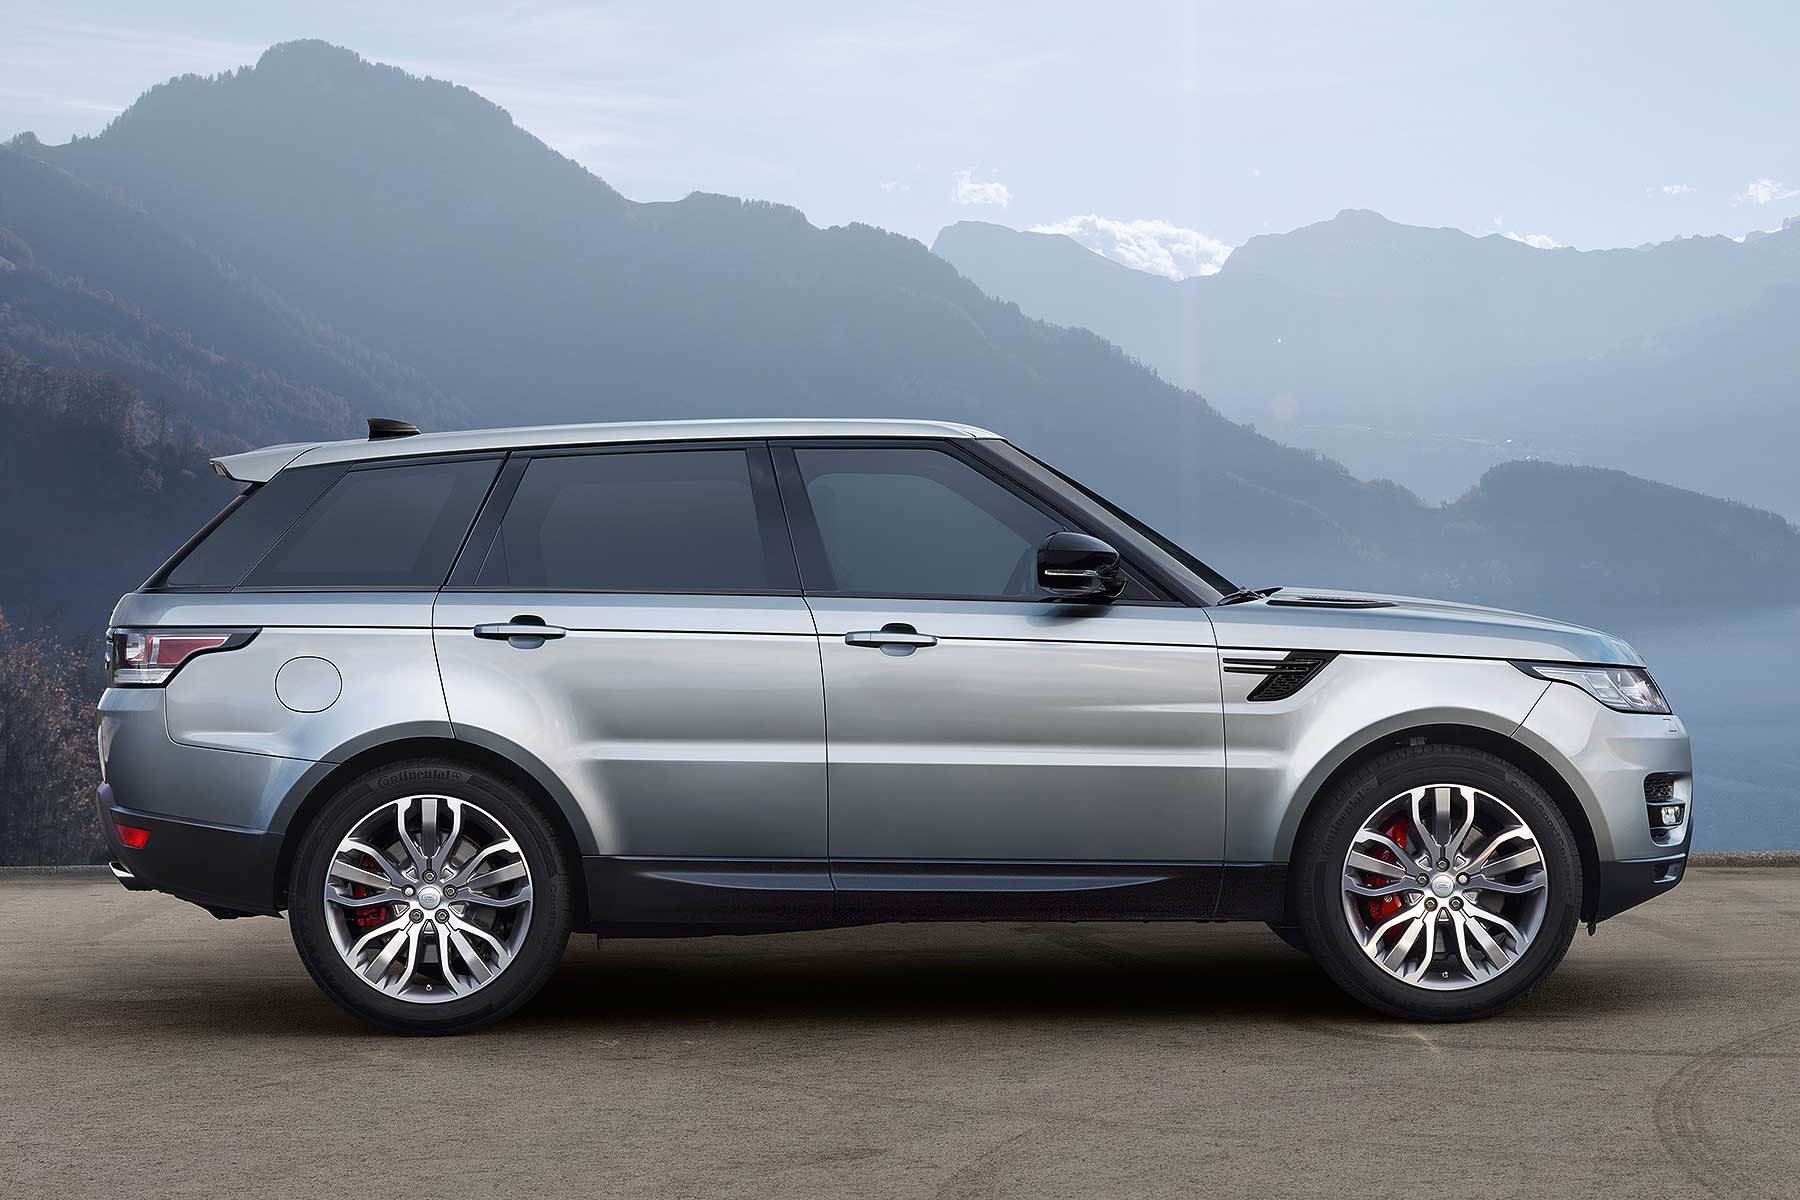 Range Rover Alquiler venta renting coches de lujo en Ibiza